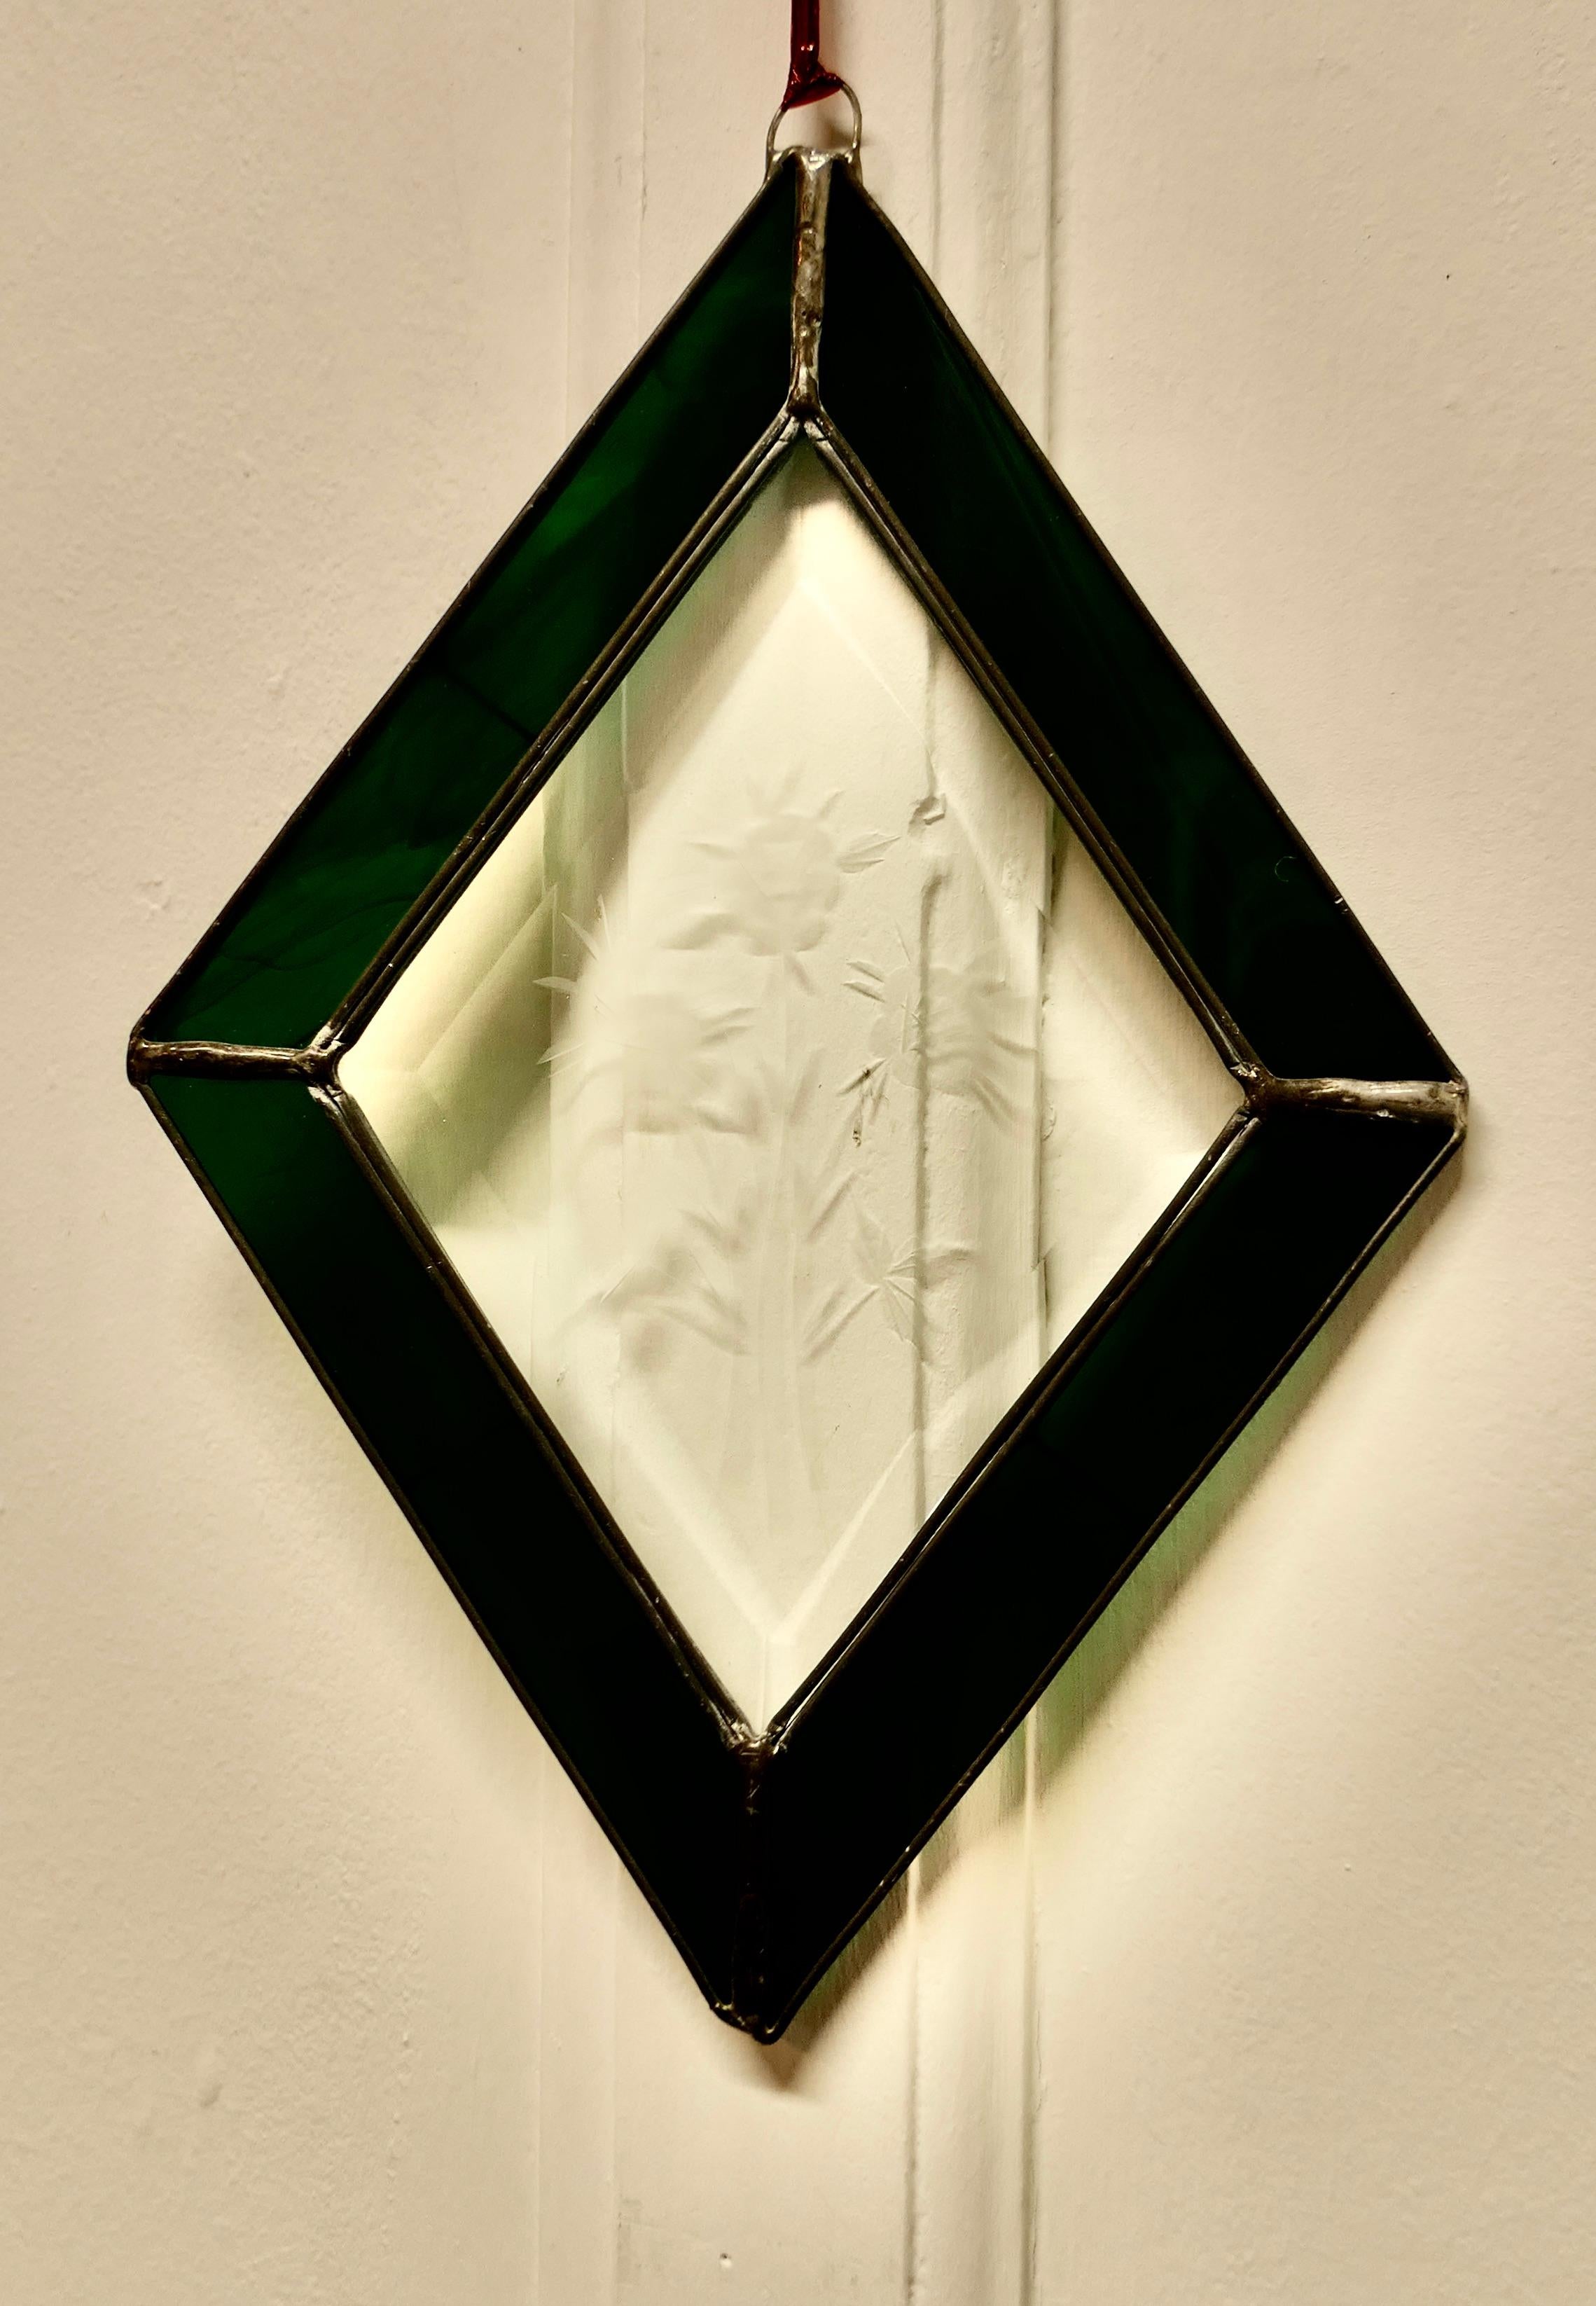 Vitrail ancien de fabrication française

Cette jolie pièce artisanale a été fabriquée à partir de verre vert irisé et gravé du 19e siècle, habilement serti pour former un motif en forme de diamant.
Le panneau est unique, il n'y en a qu'un seul